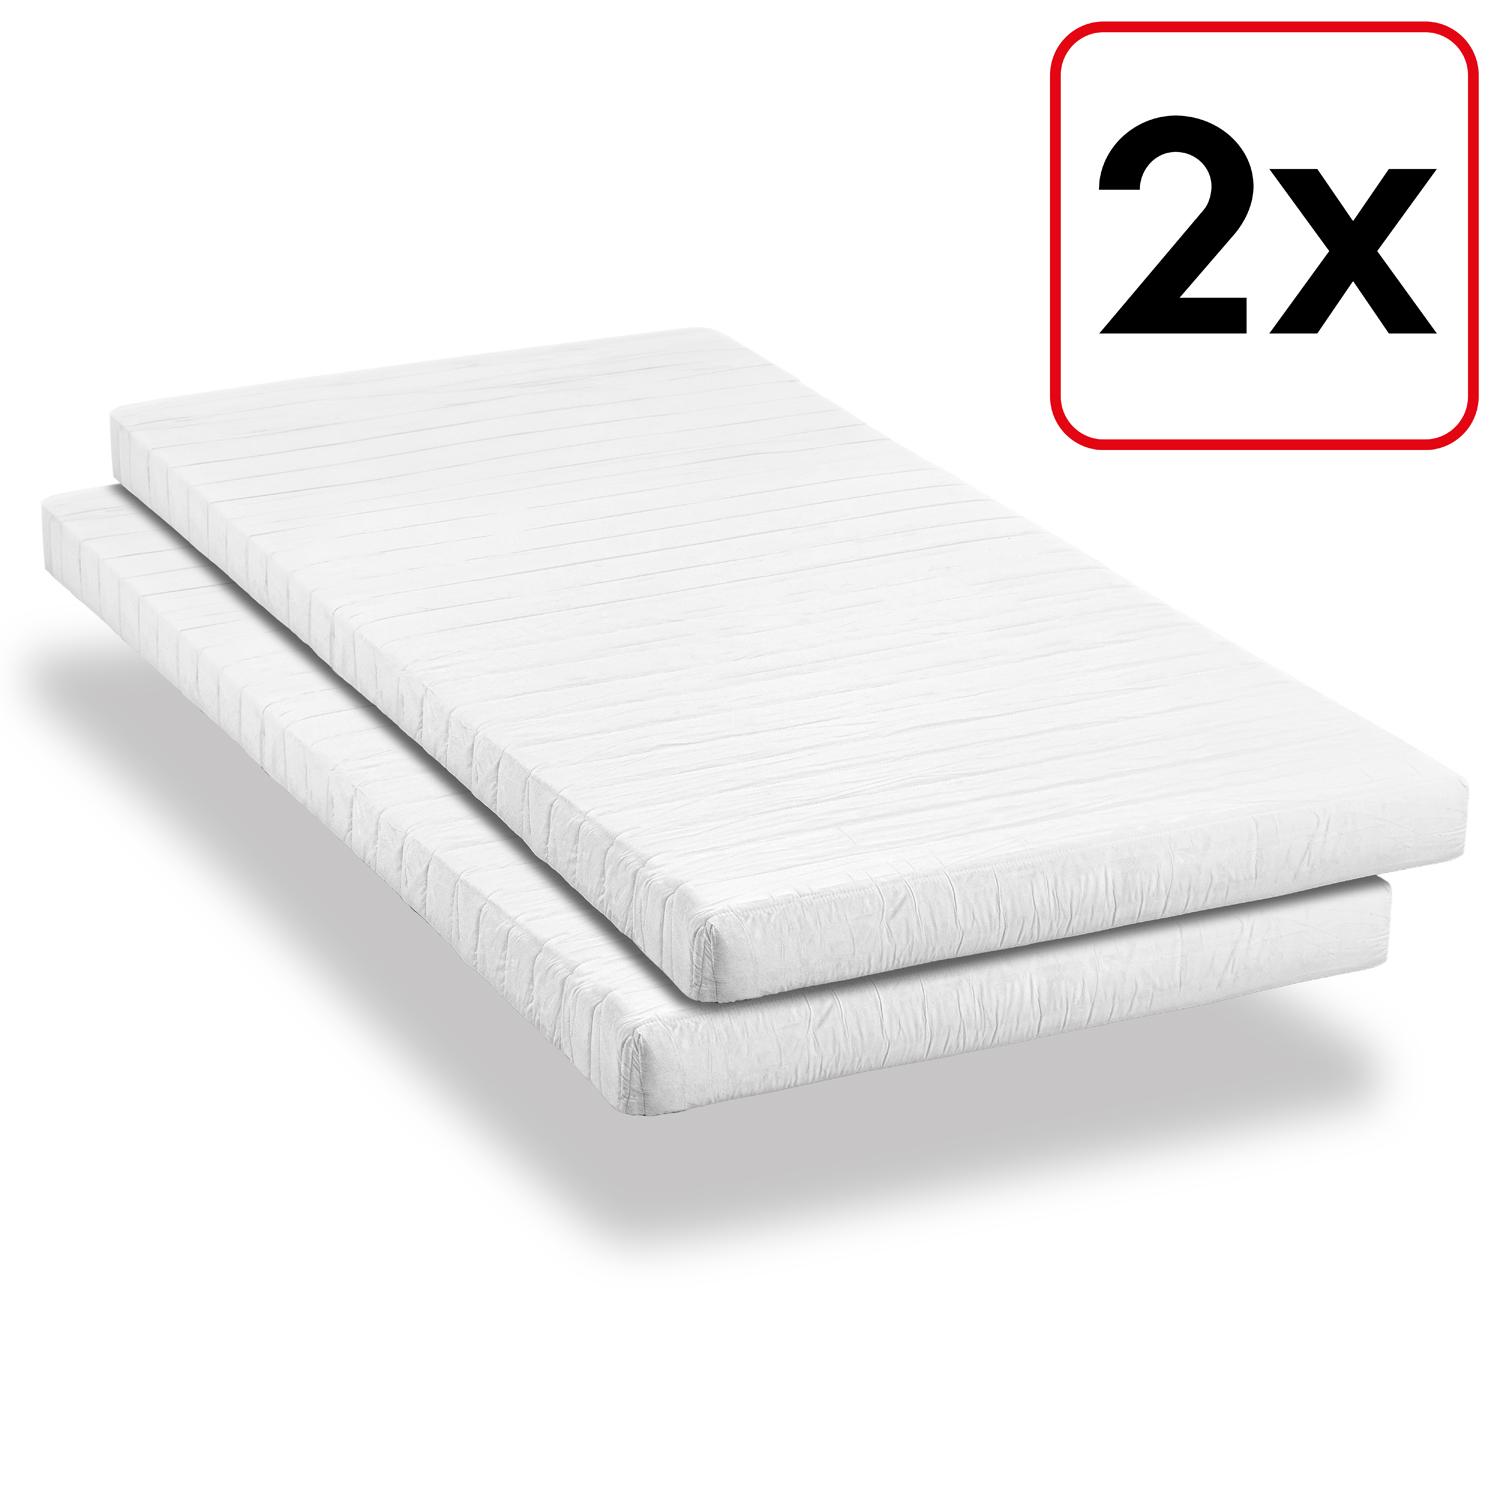 Comfort foam mattress K10 90 x 200 cm, height 10 cm, firmness level H3, twin set